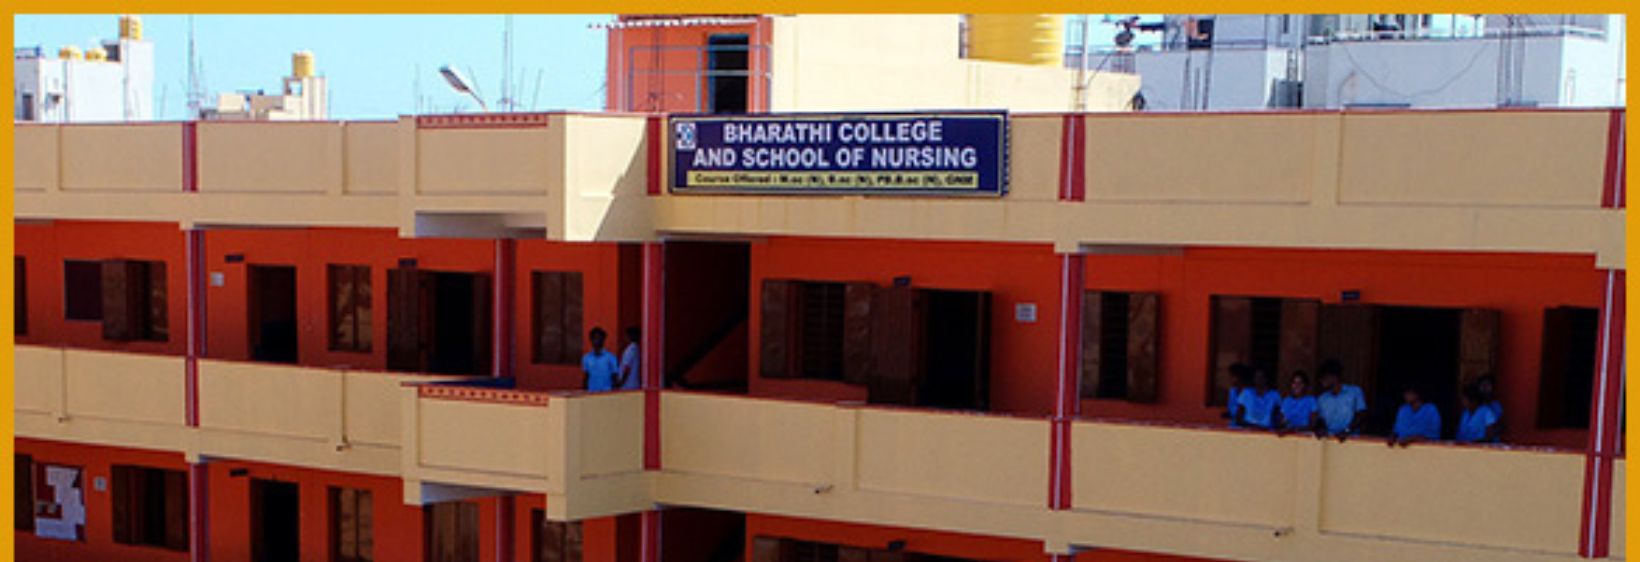 Bharathi College of Nursing - Bangalore